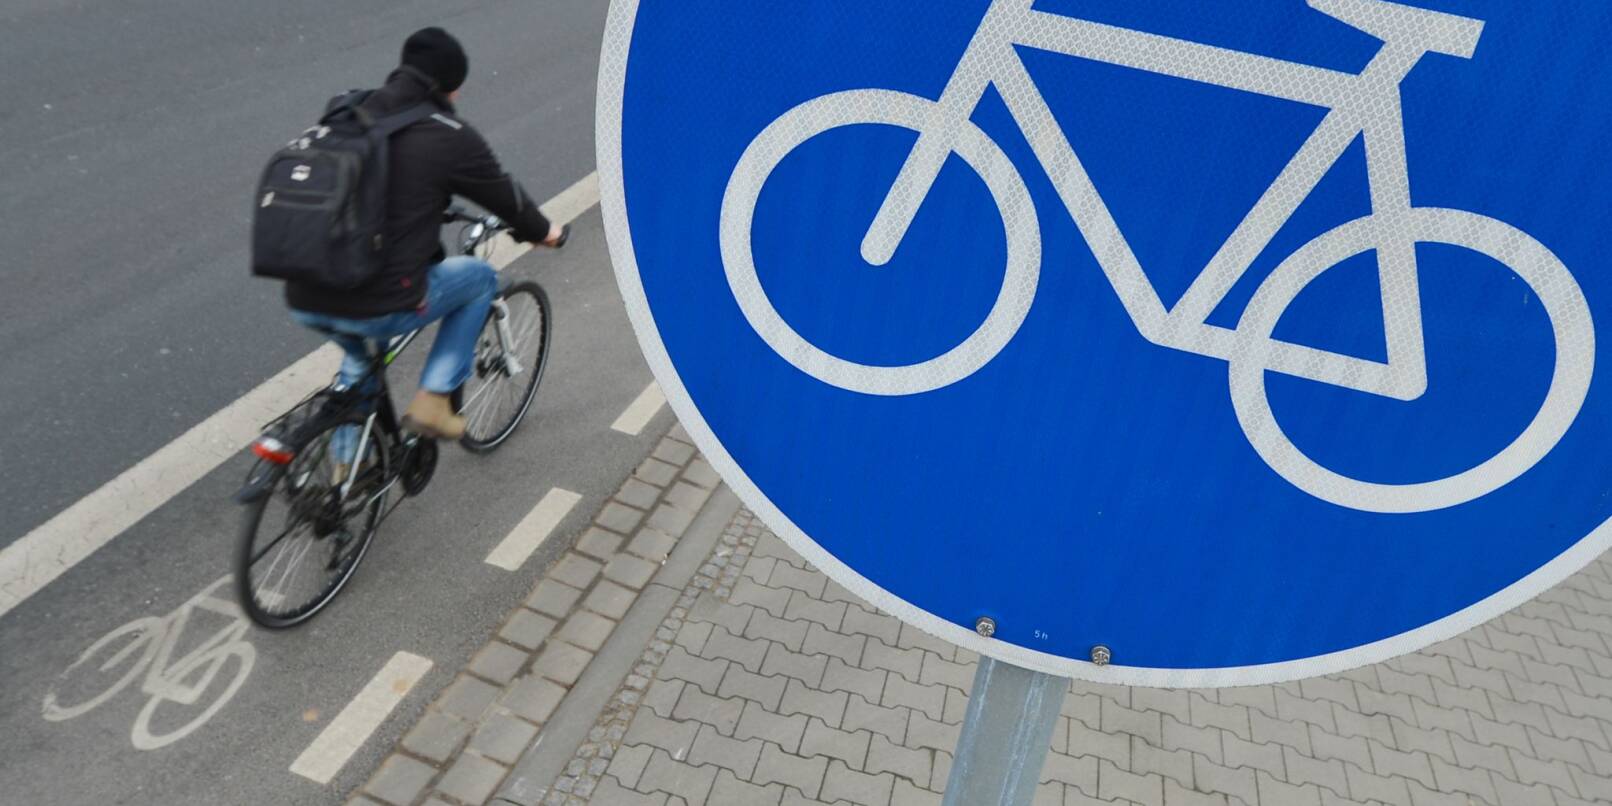 Ein Mann fährt mit seinem Fahrrad auf einem mit einem Verkehrsschild gekennzeichneten Radweg.